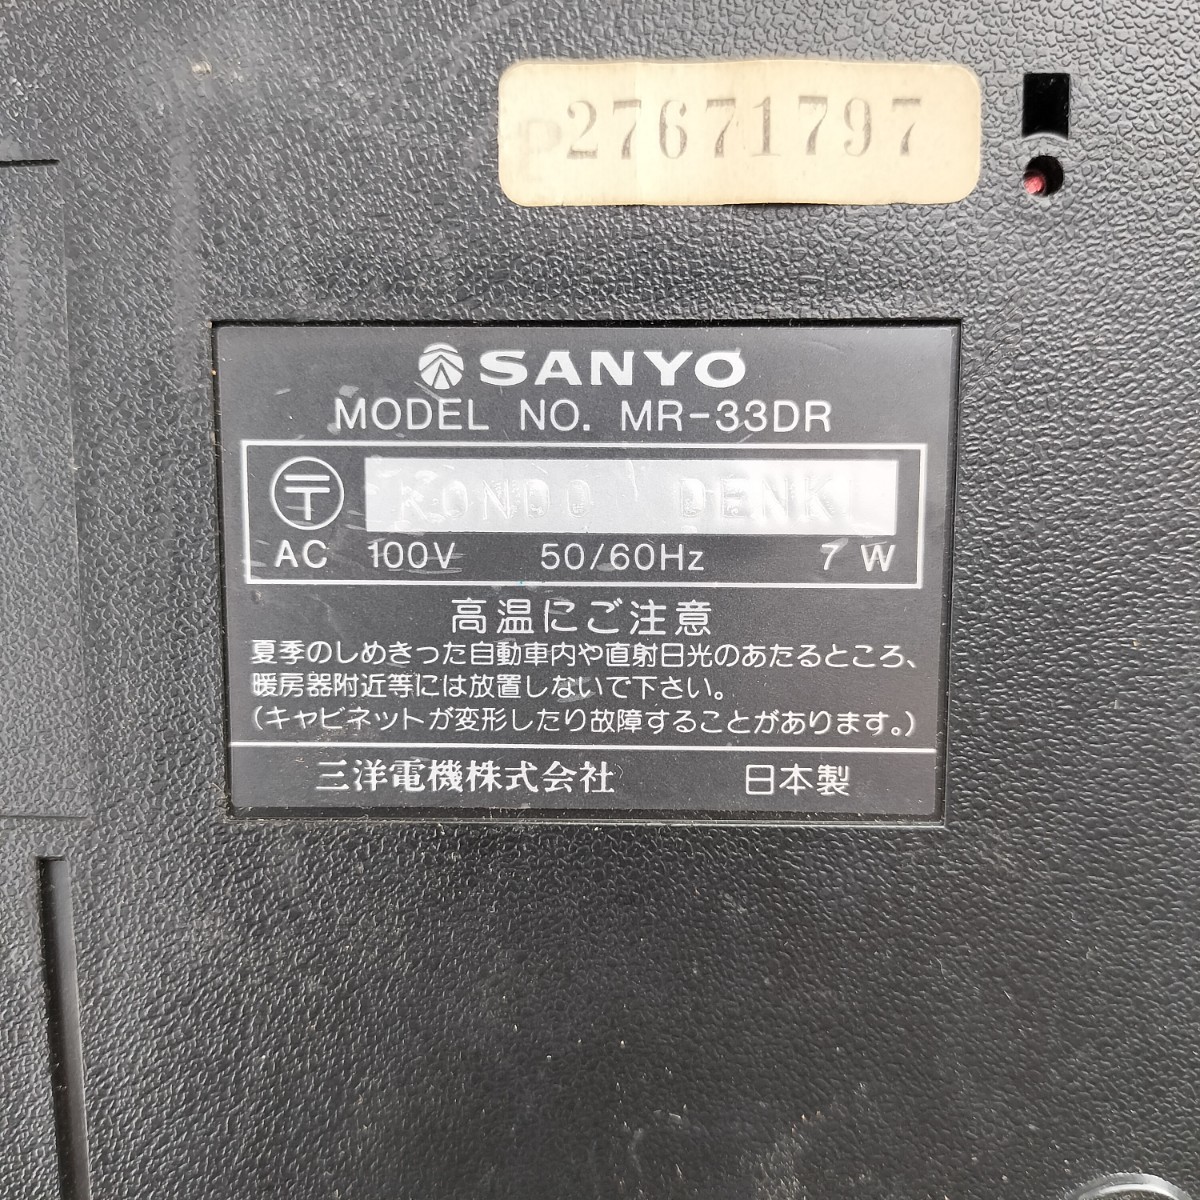 SANYO/ Sanyo данные магнитофон MR-33DR корпус только 60228-13